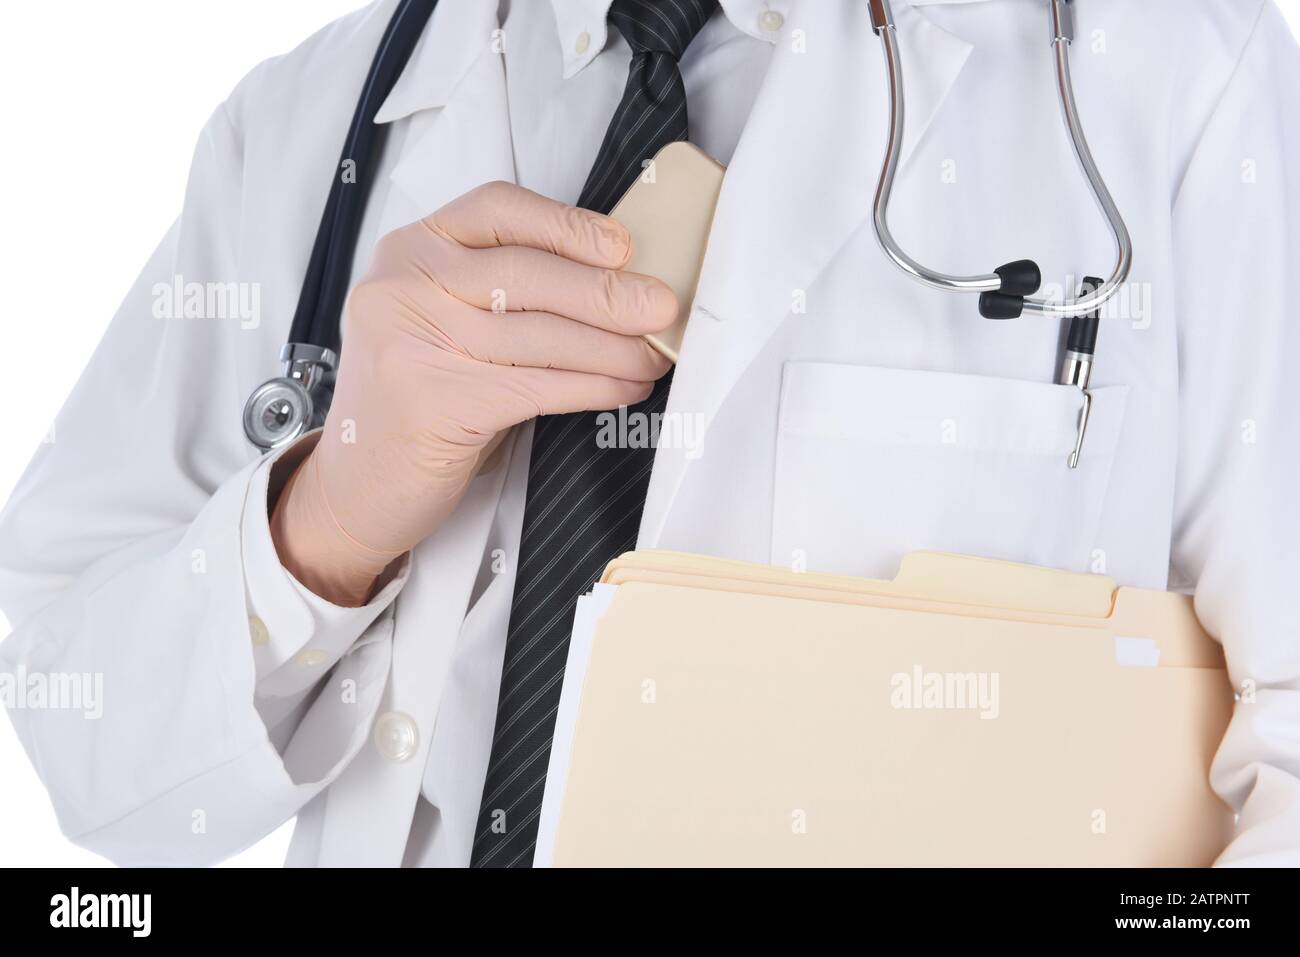 Gros plan d'un médecin plaçant son téléphone cellulaire dans ses blouses de laboratoire à l'intérieur de la poche. L'homme tient des fichiers sous son autre bras et est imreconnaissable. Banque D'Images